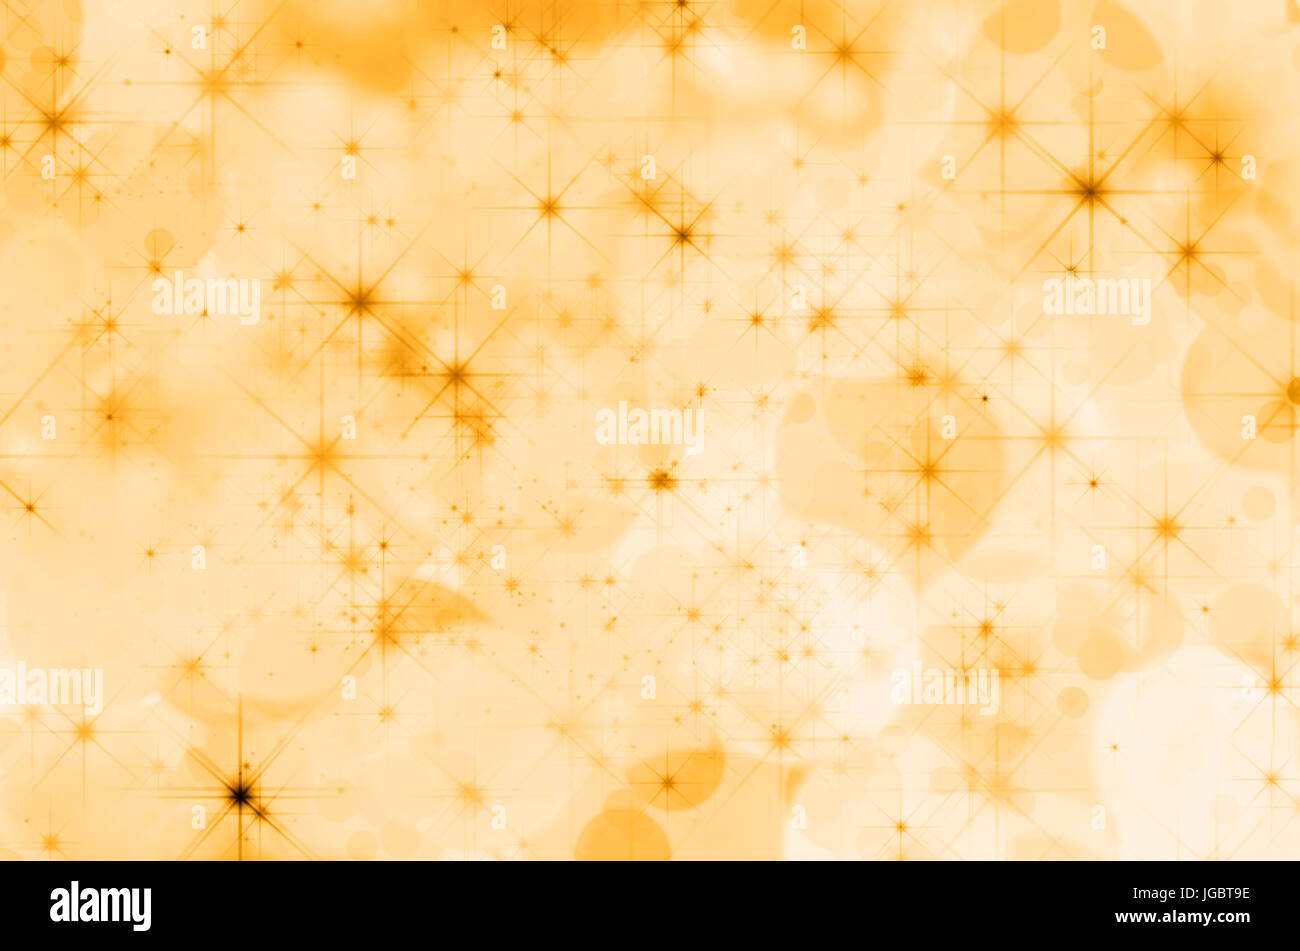 Ein Hintergrund der gelben Farbtöne von Bokeh Effekte komponiert und mit Sternen übersät. Stockfoto